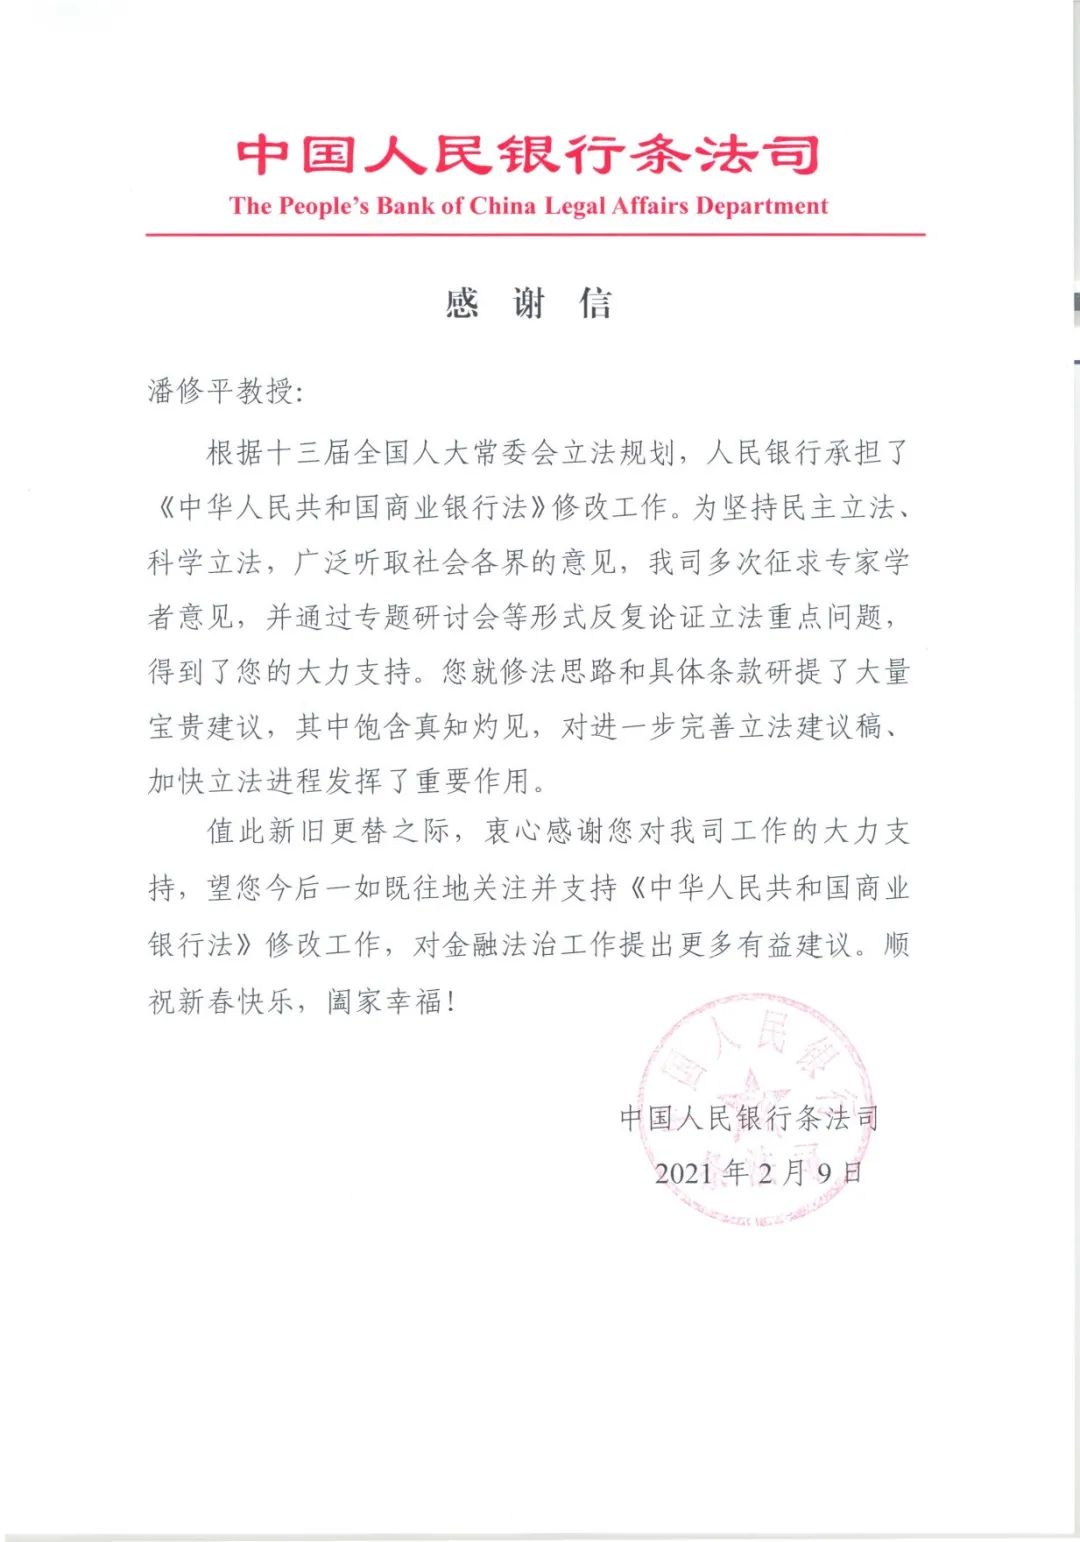 隆安潘修平律师受聘担任《商业银行法》修改专家受到中国人民银行表彰